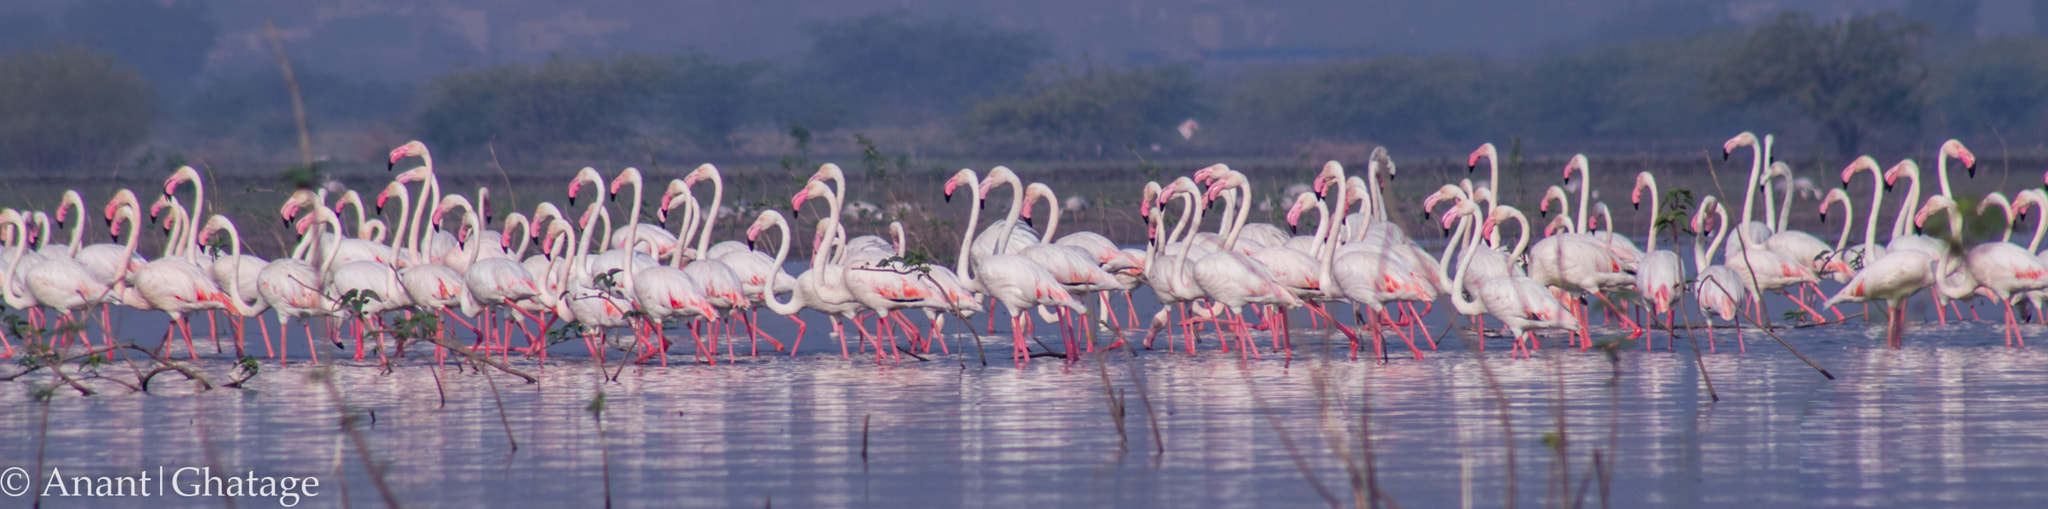 Canon EOS 80D sample photo. Flamingo army photography